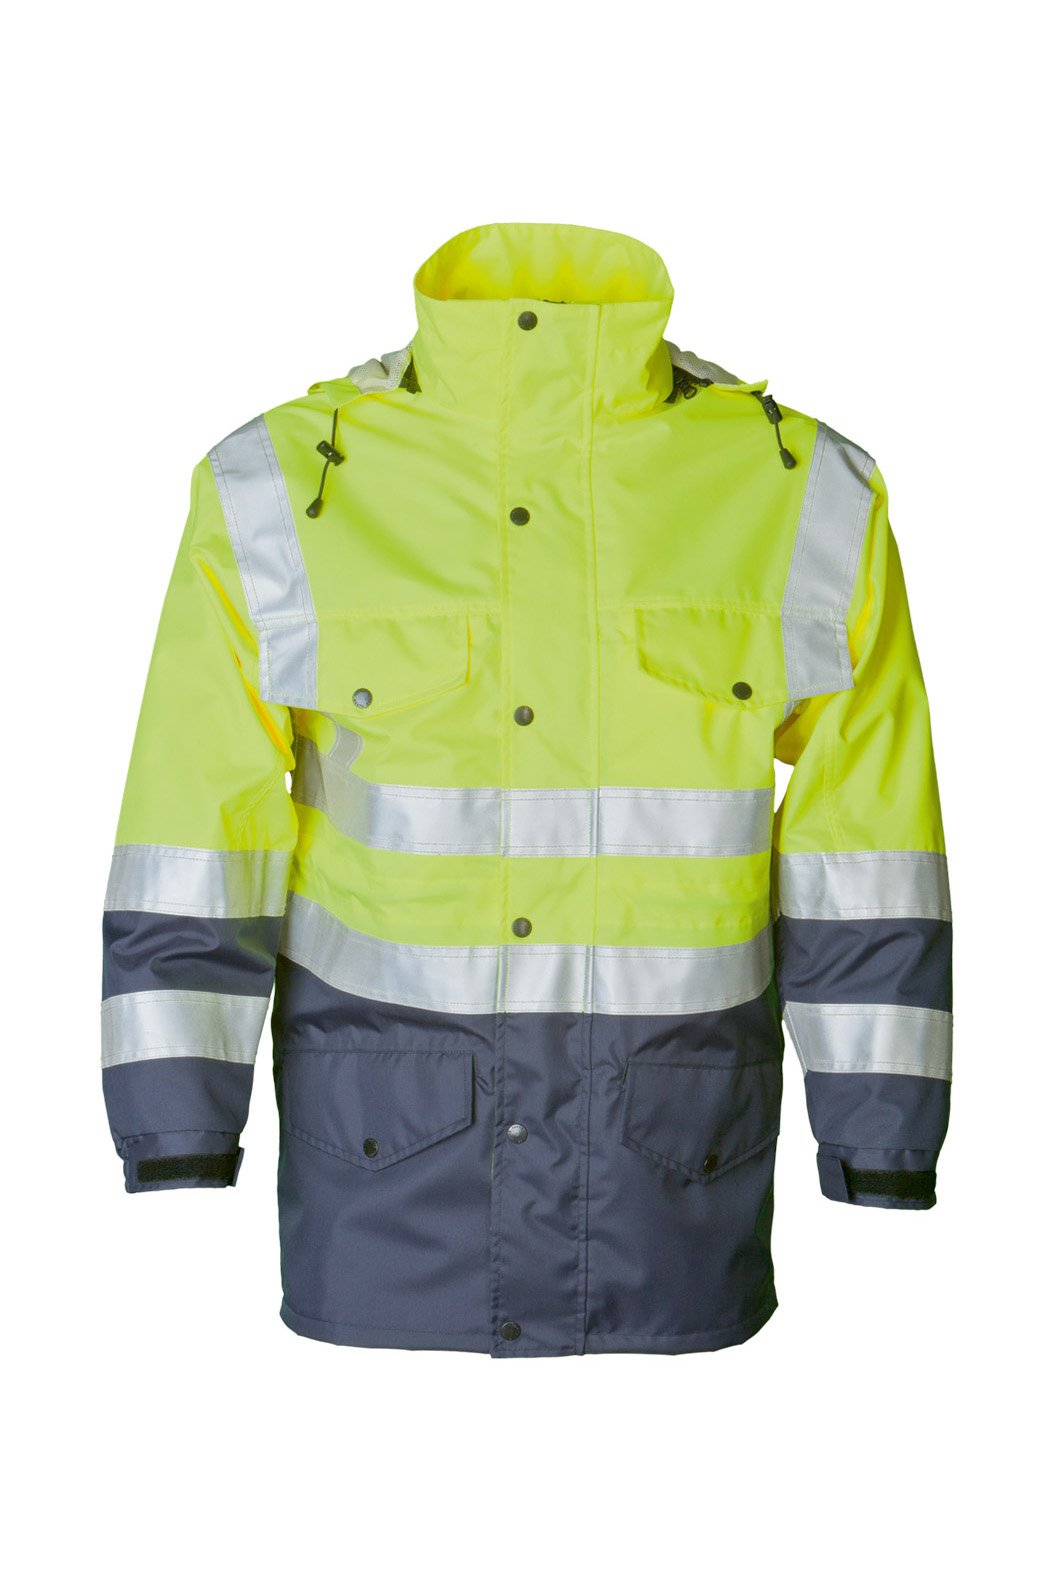 Sicherheitsjacke, fluorescent lemon/navy, ISO 20471 Kl. 3